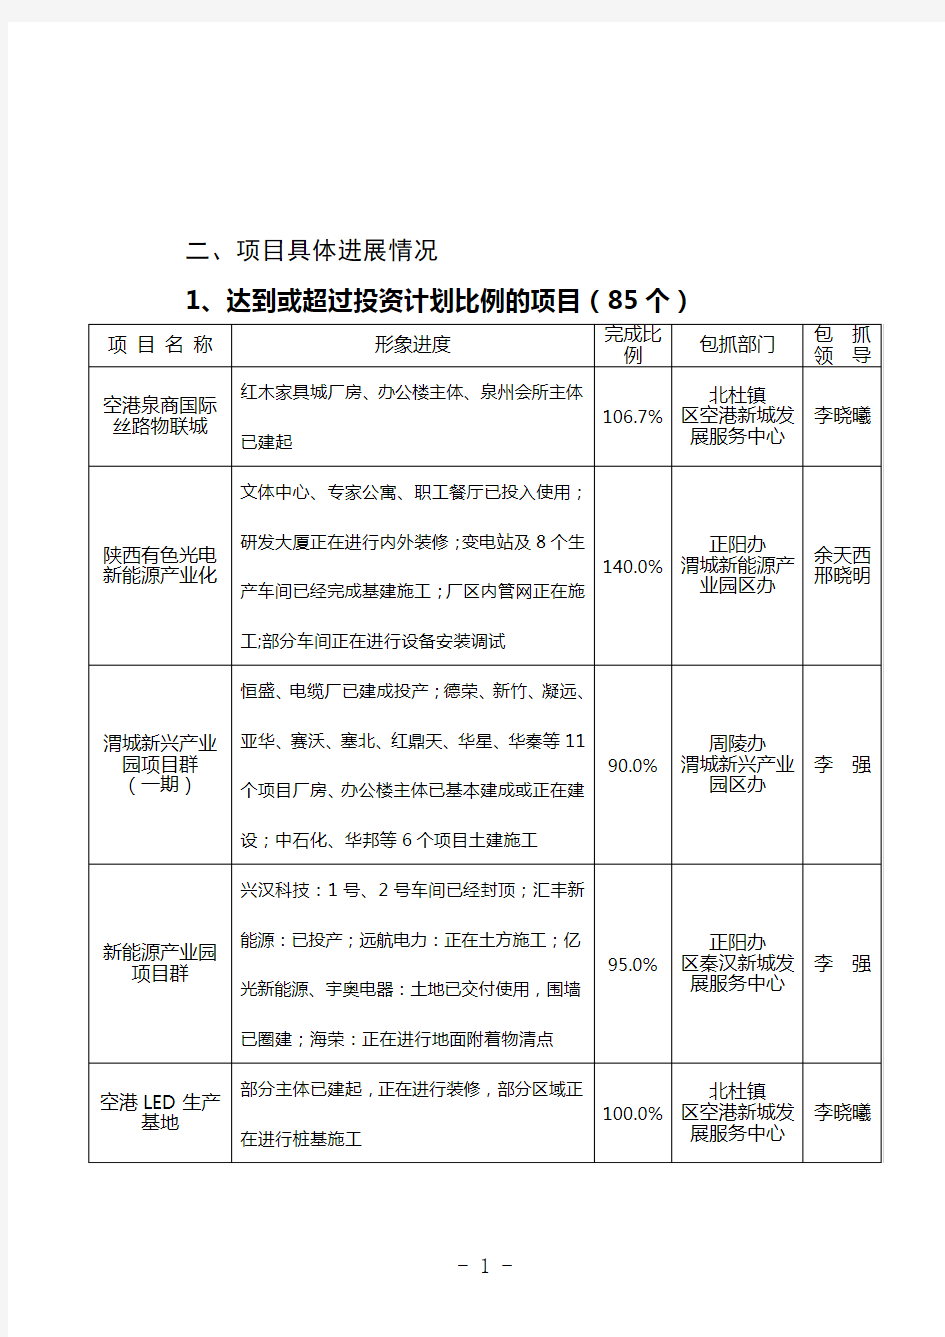 渭城区2014年1-9月重点项目建设情况通报【模板】